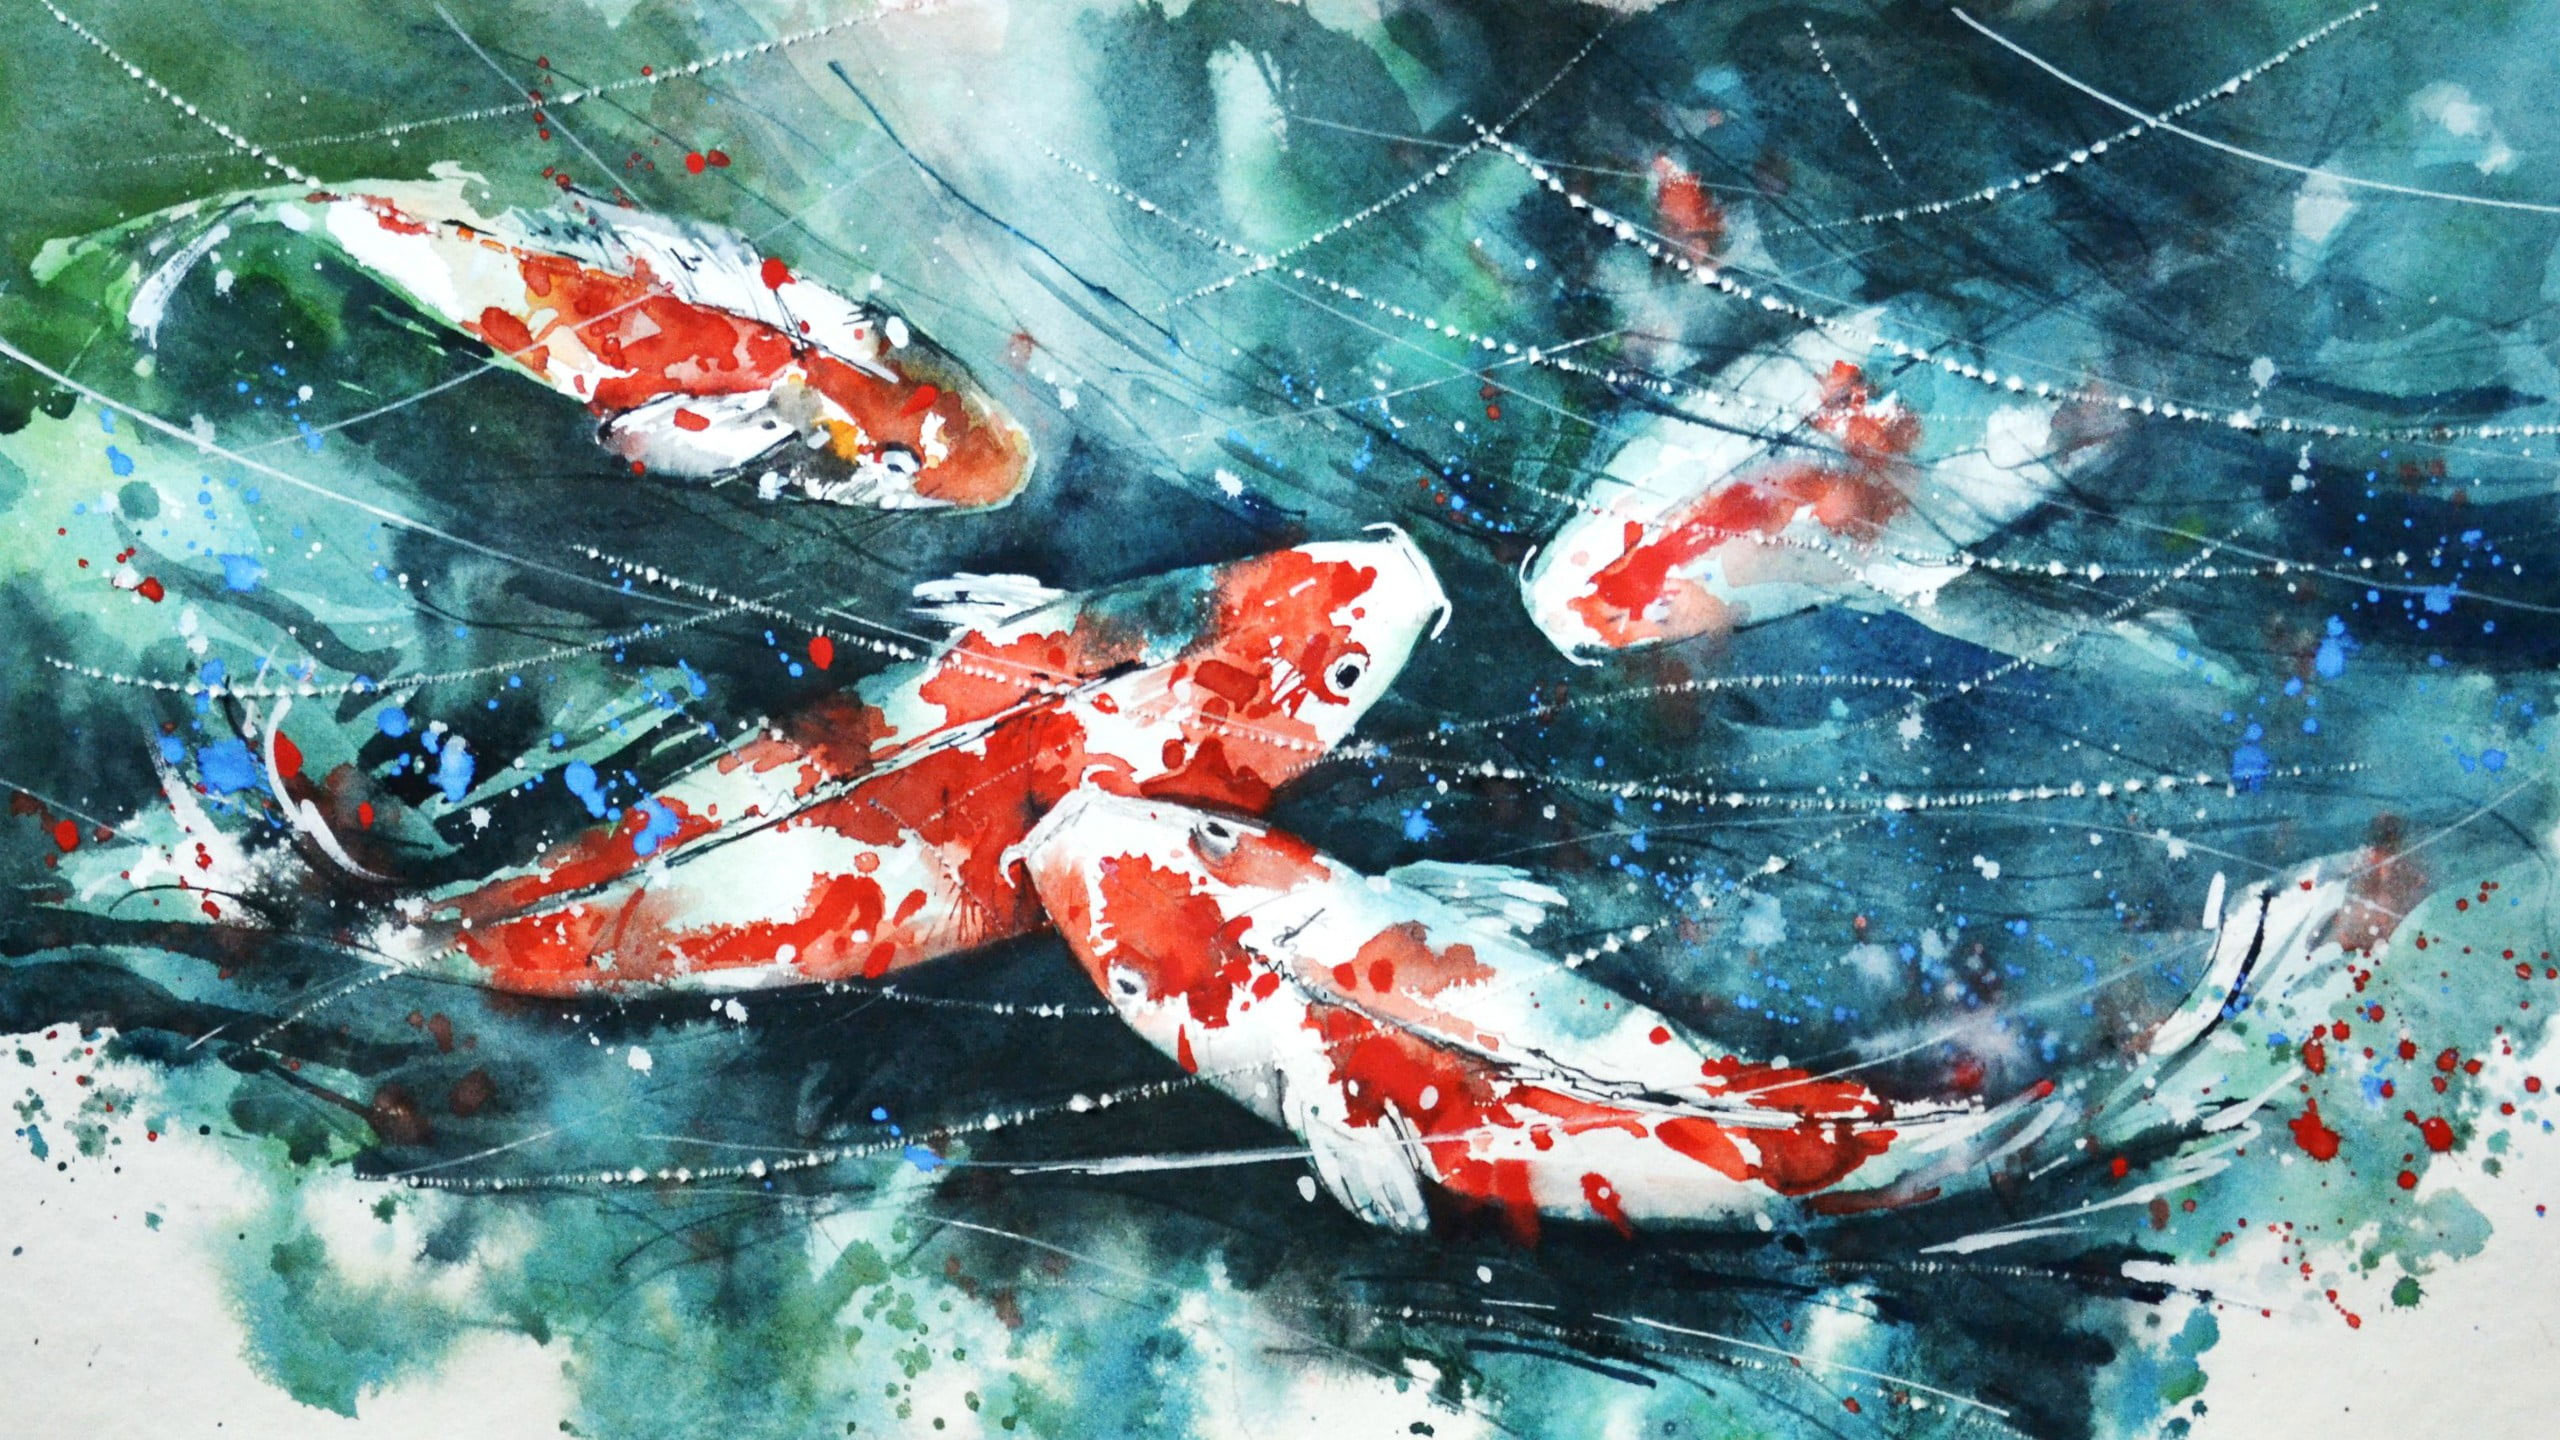 Wallpaper School Of Koi Fish Painting, Watercolor, Artwork